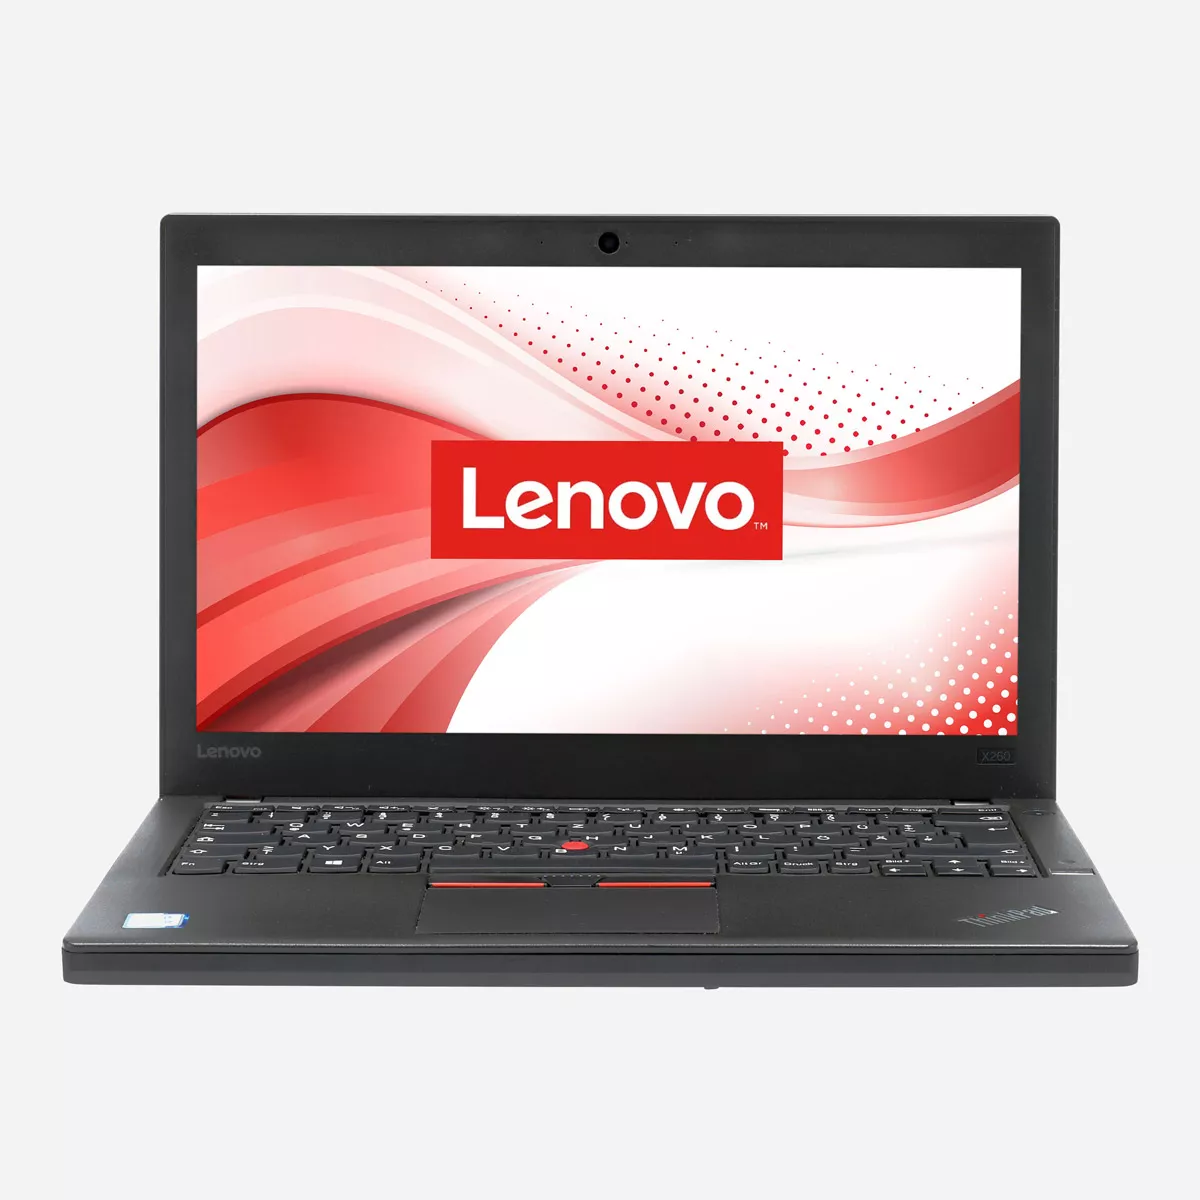 Lenovo ThinkPad X260 Core i5 6300U 240 GB SSD Webcam B